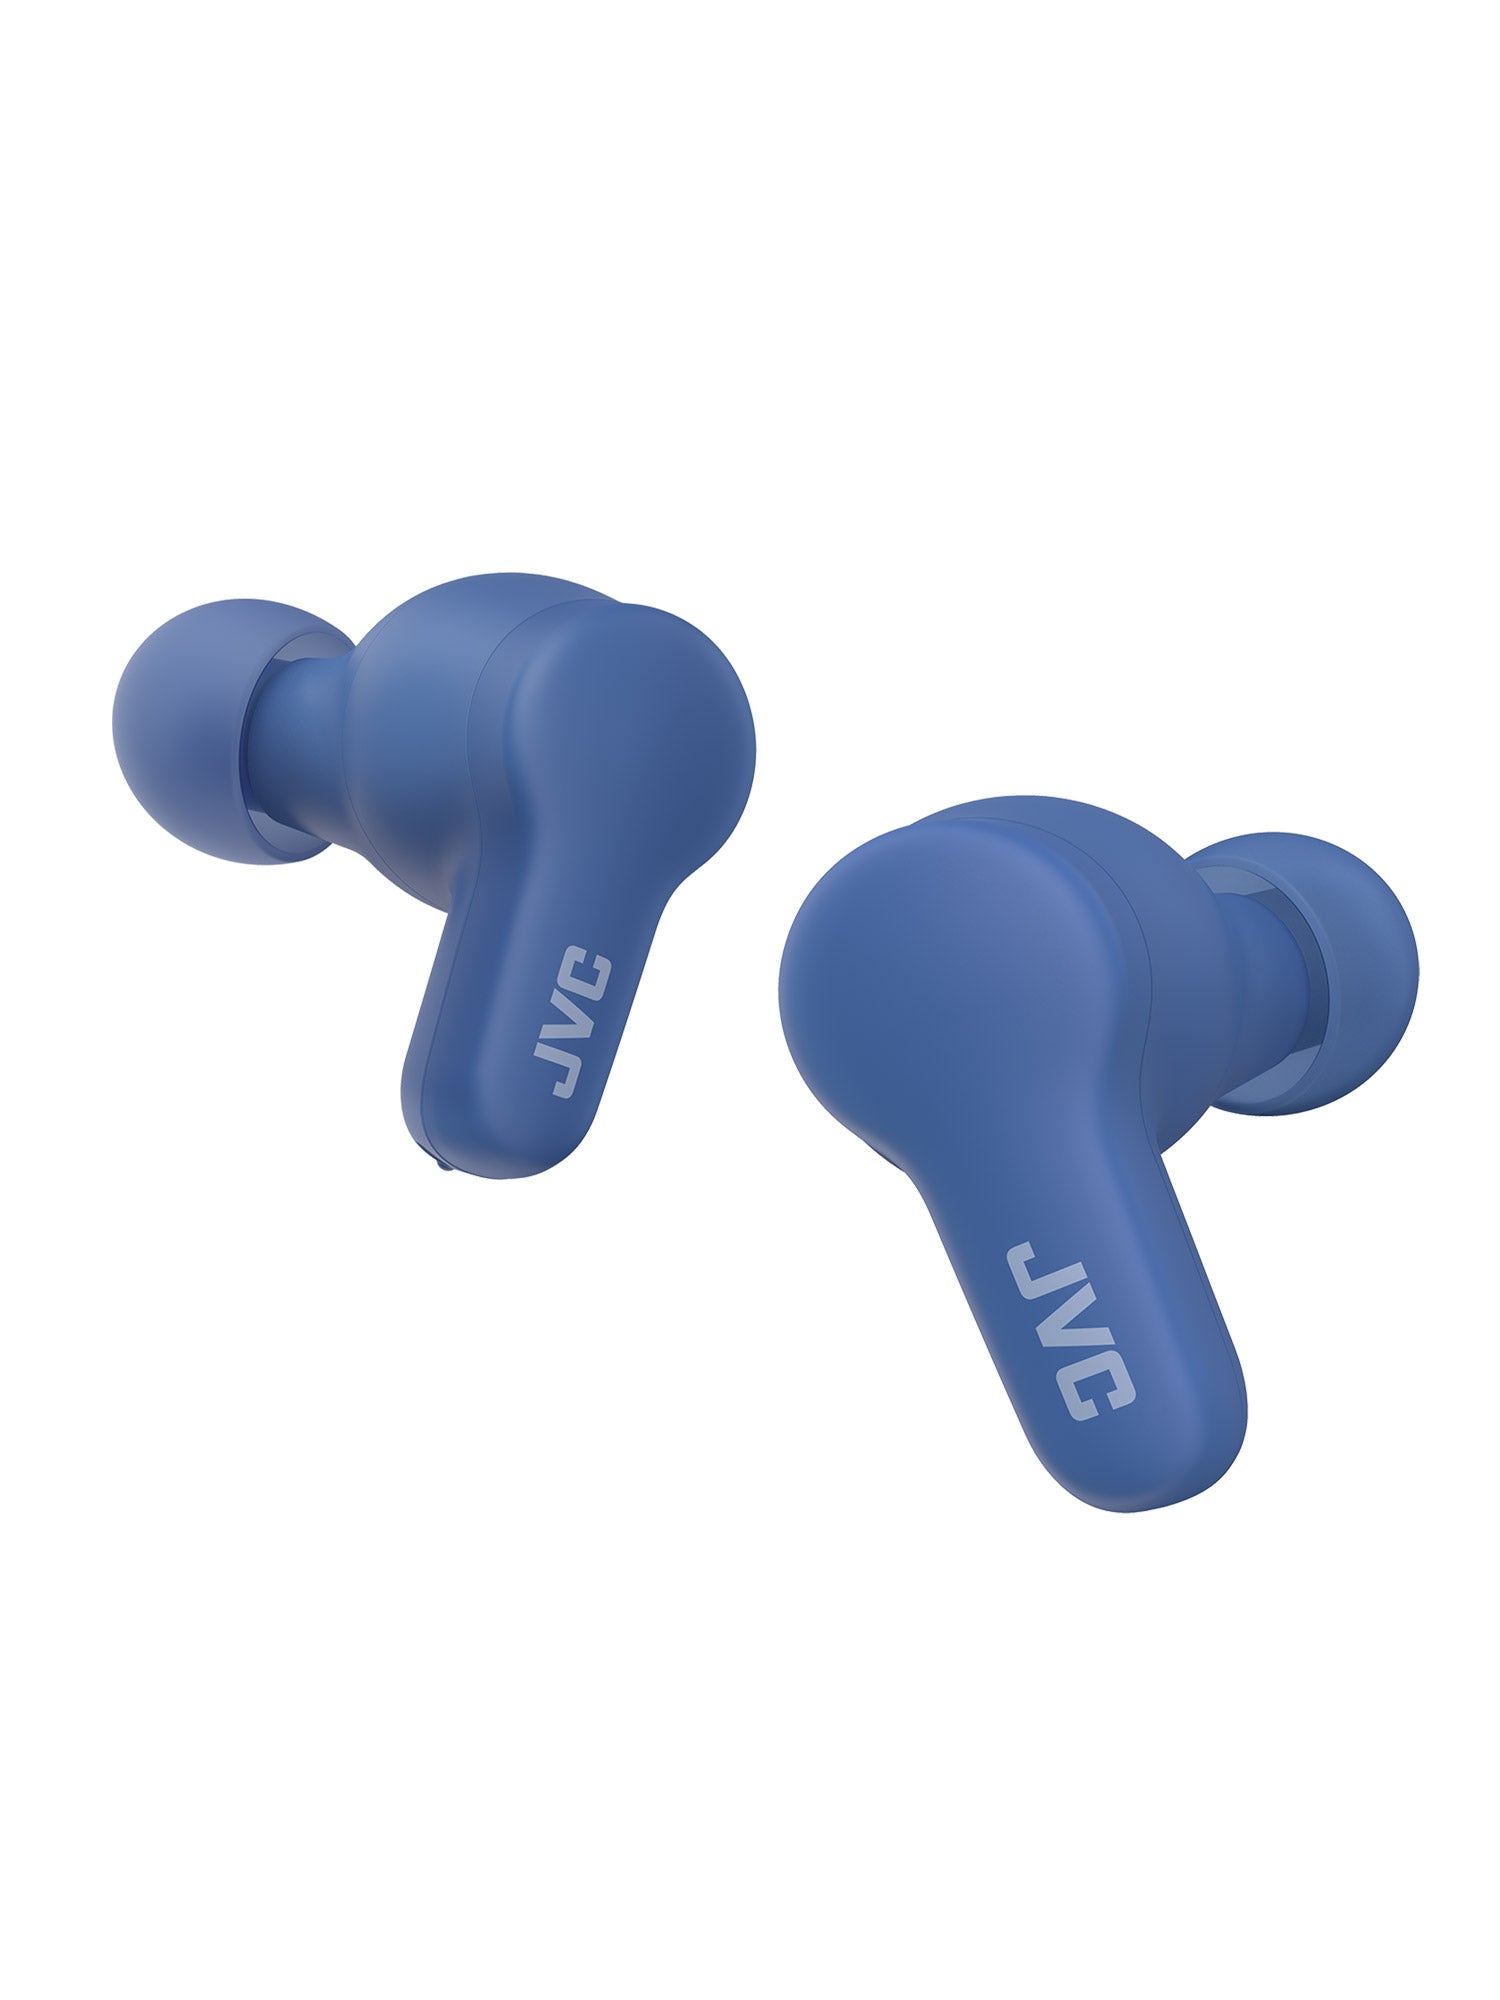 HA-A7T2 in blue wireless earbuds by JVC